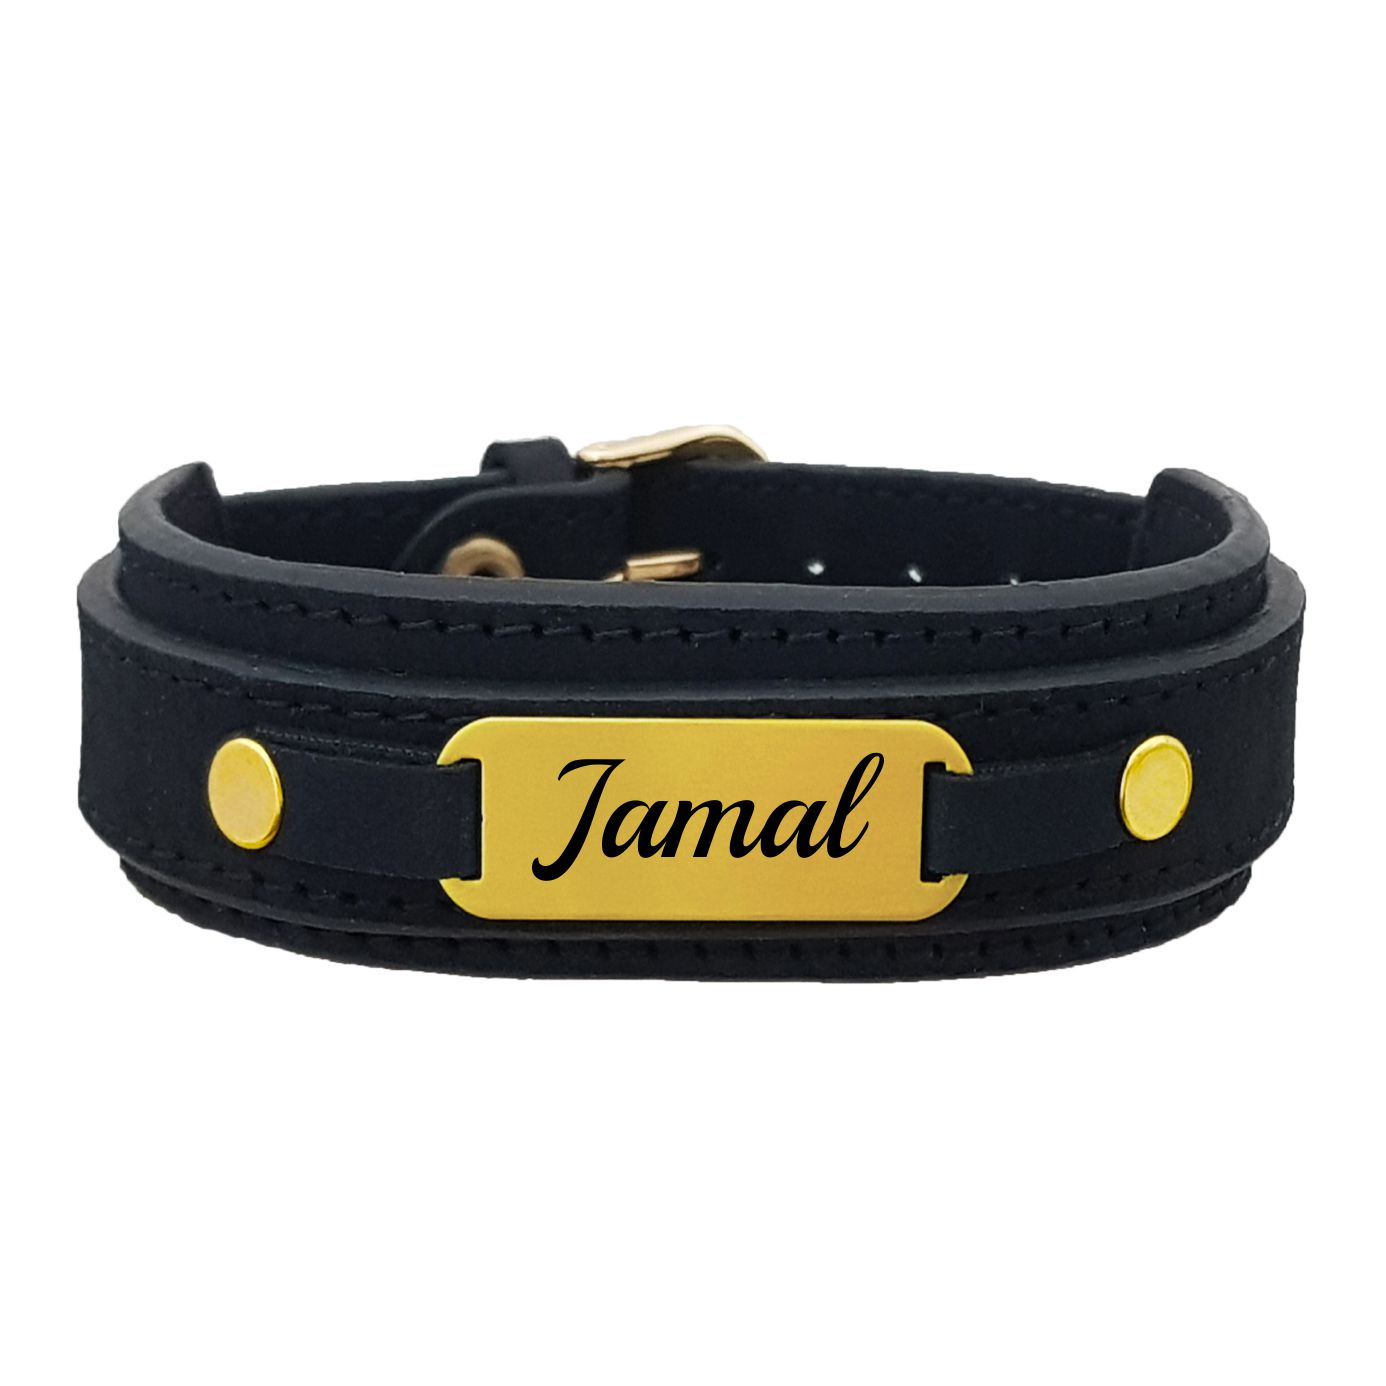 دستبند نقره مردانه لیردا مدل جمال کد 0129 DCHNT